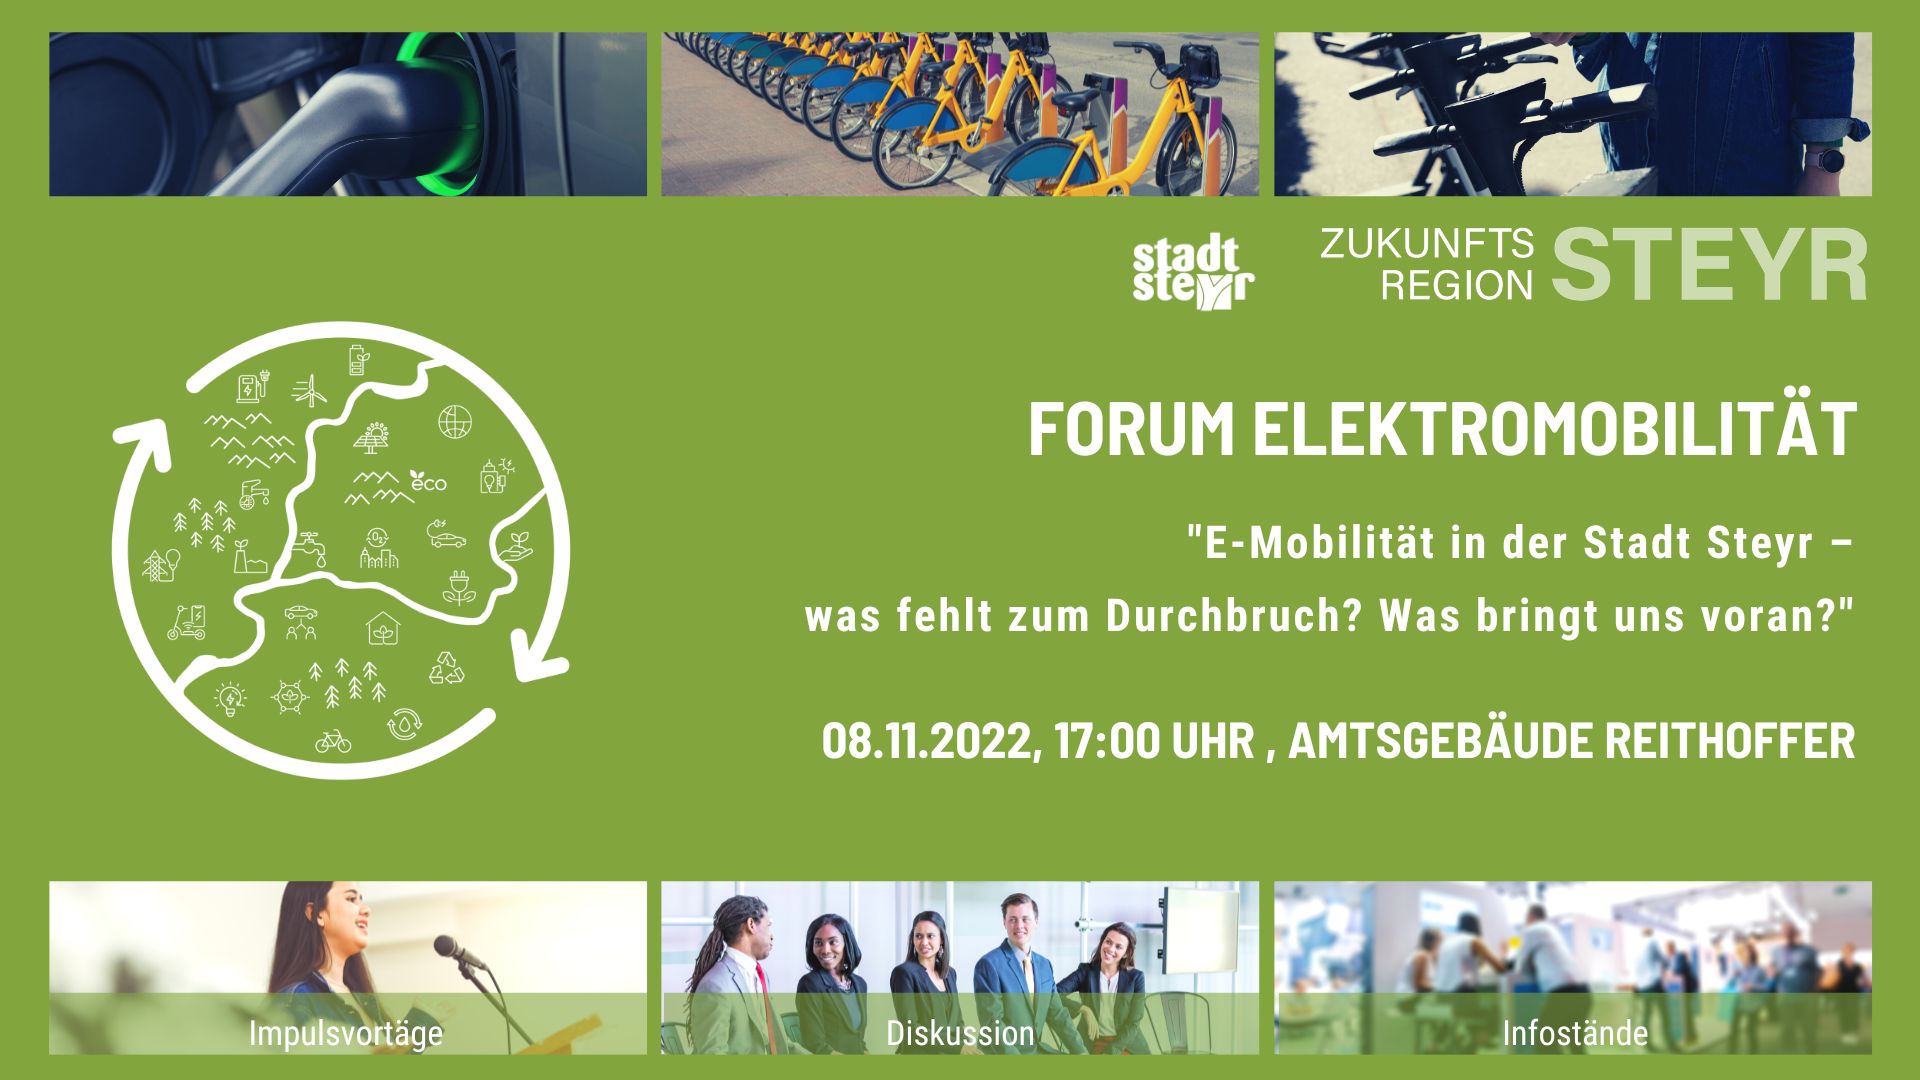 Erstes Forum Elektromobilität in Steyr | Forum Elektromoblitaet